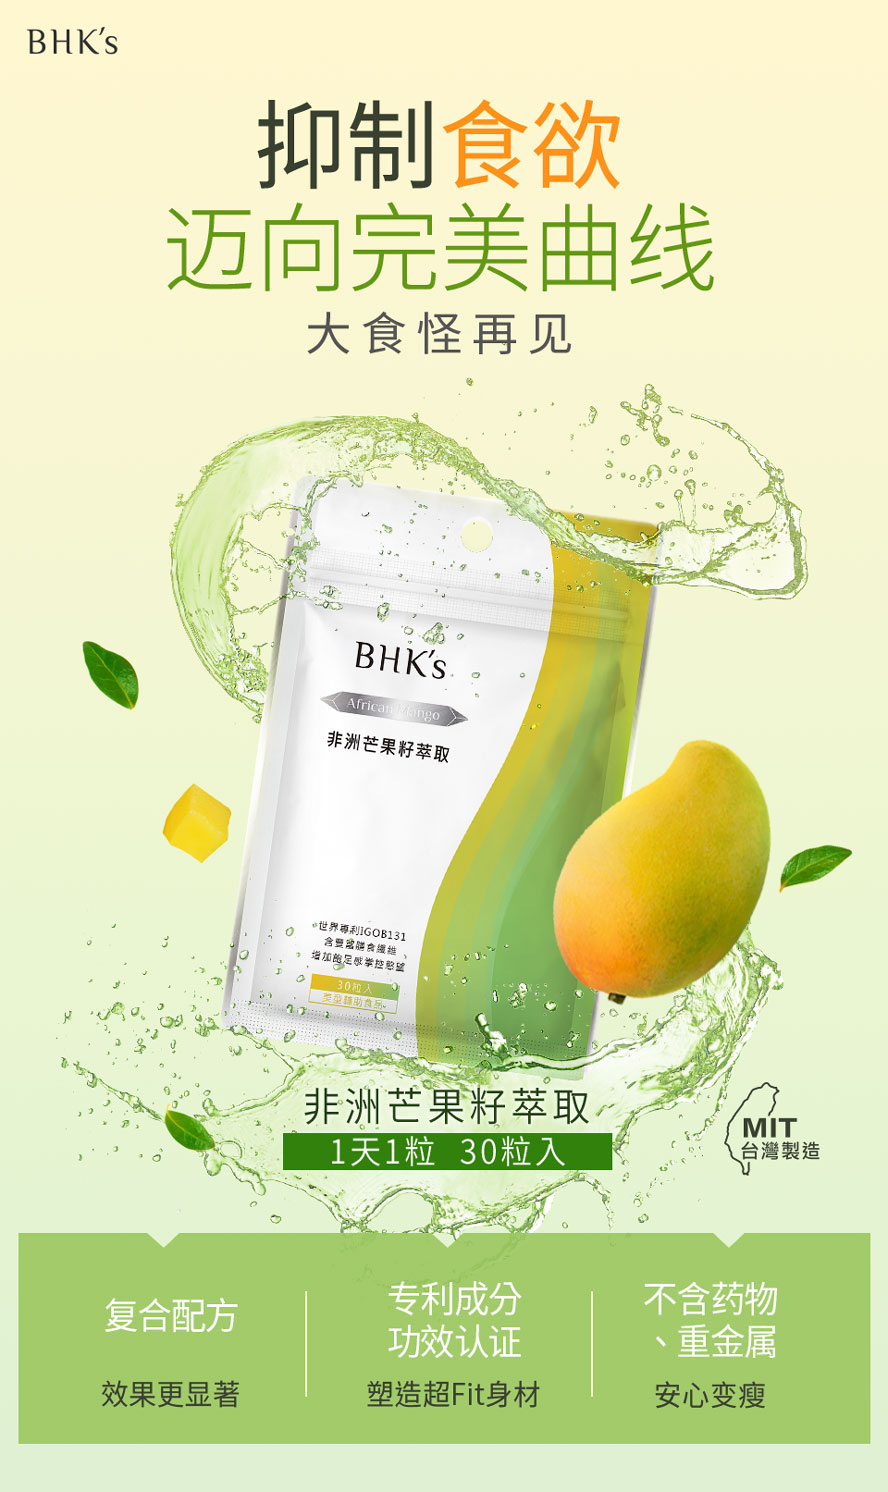 BHK's非洲芒果籽萃取为减肥食品推荐，成功控制食量、抑制脂肪囤积。